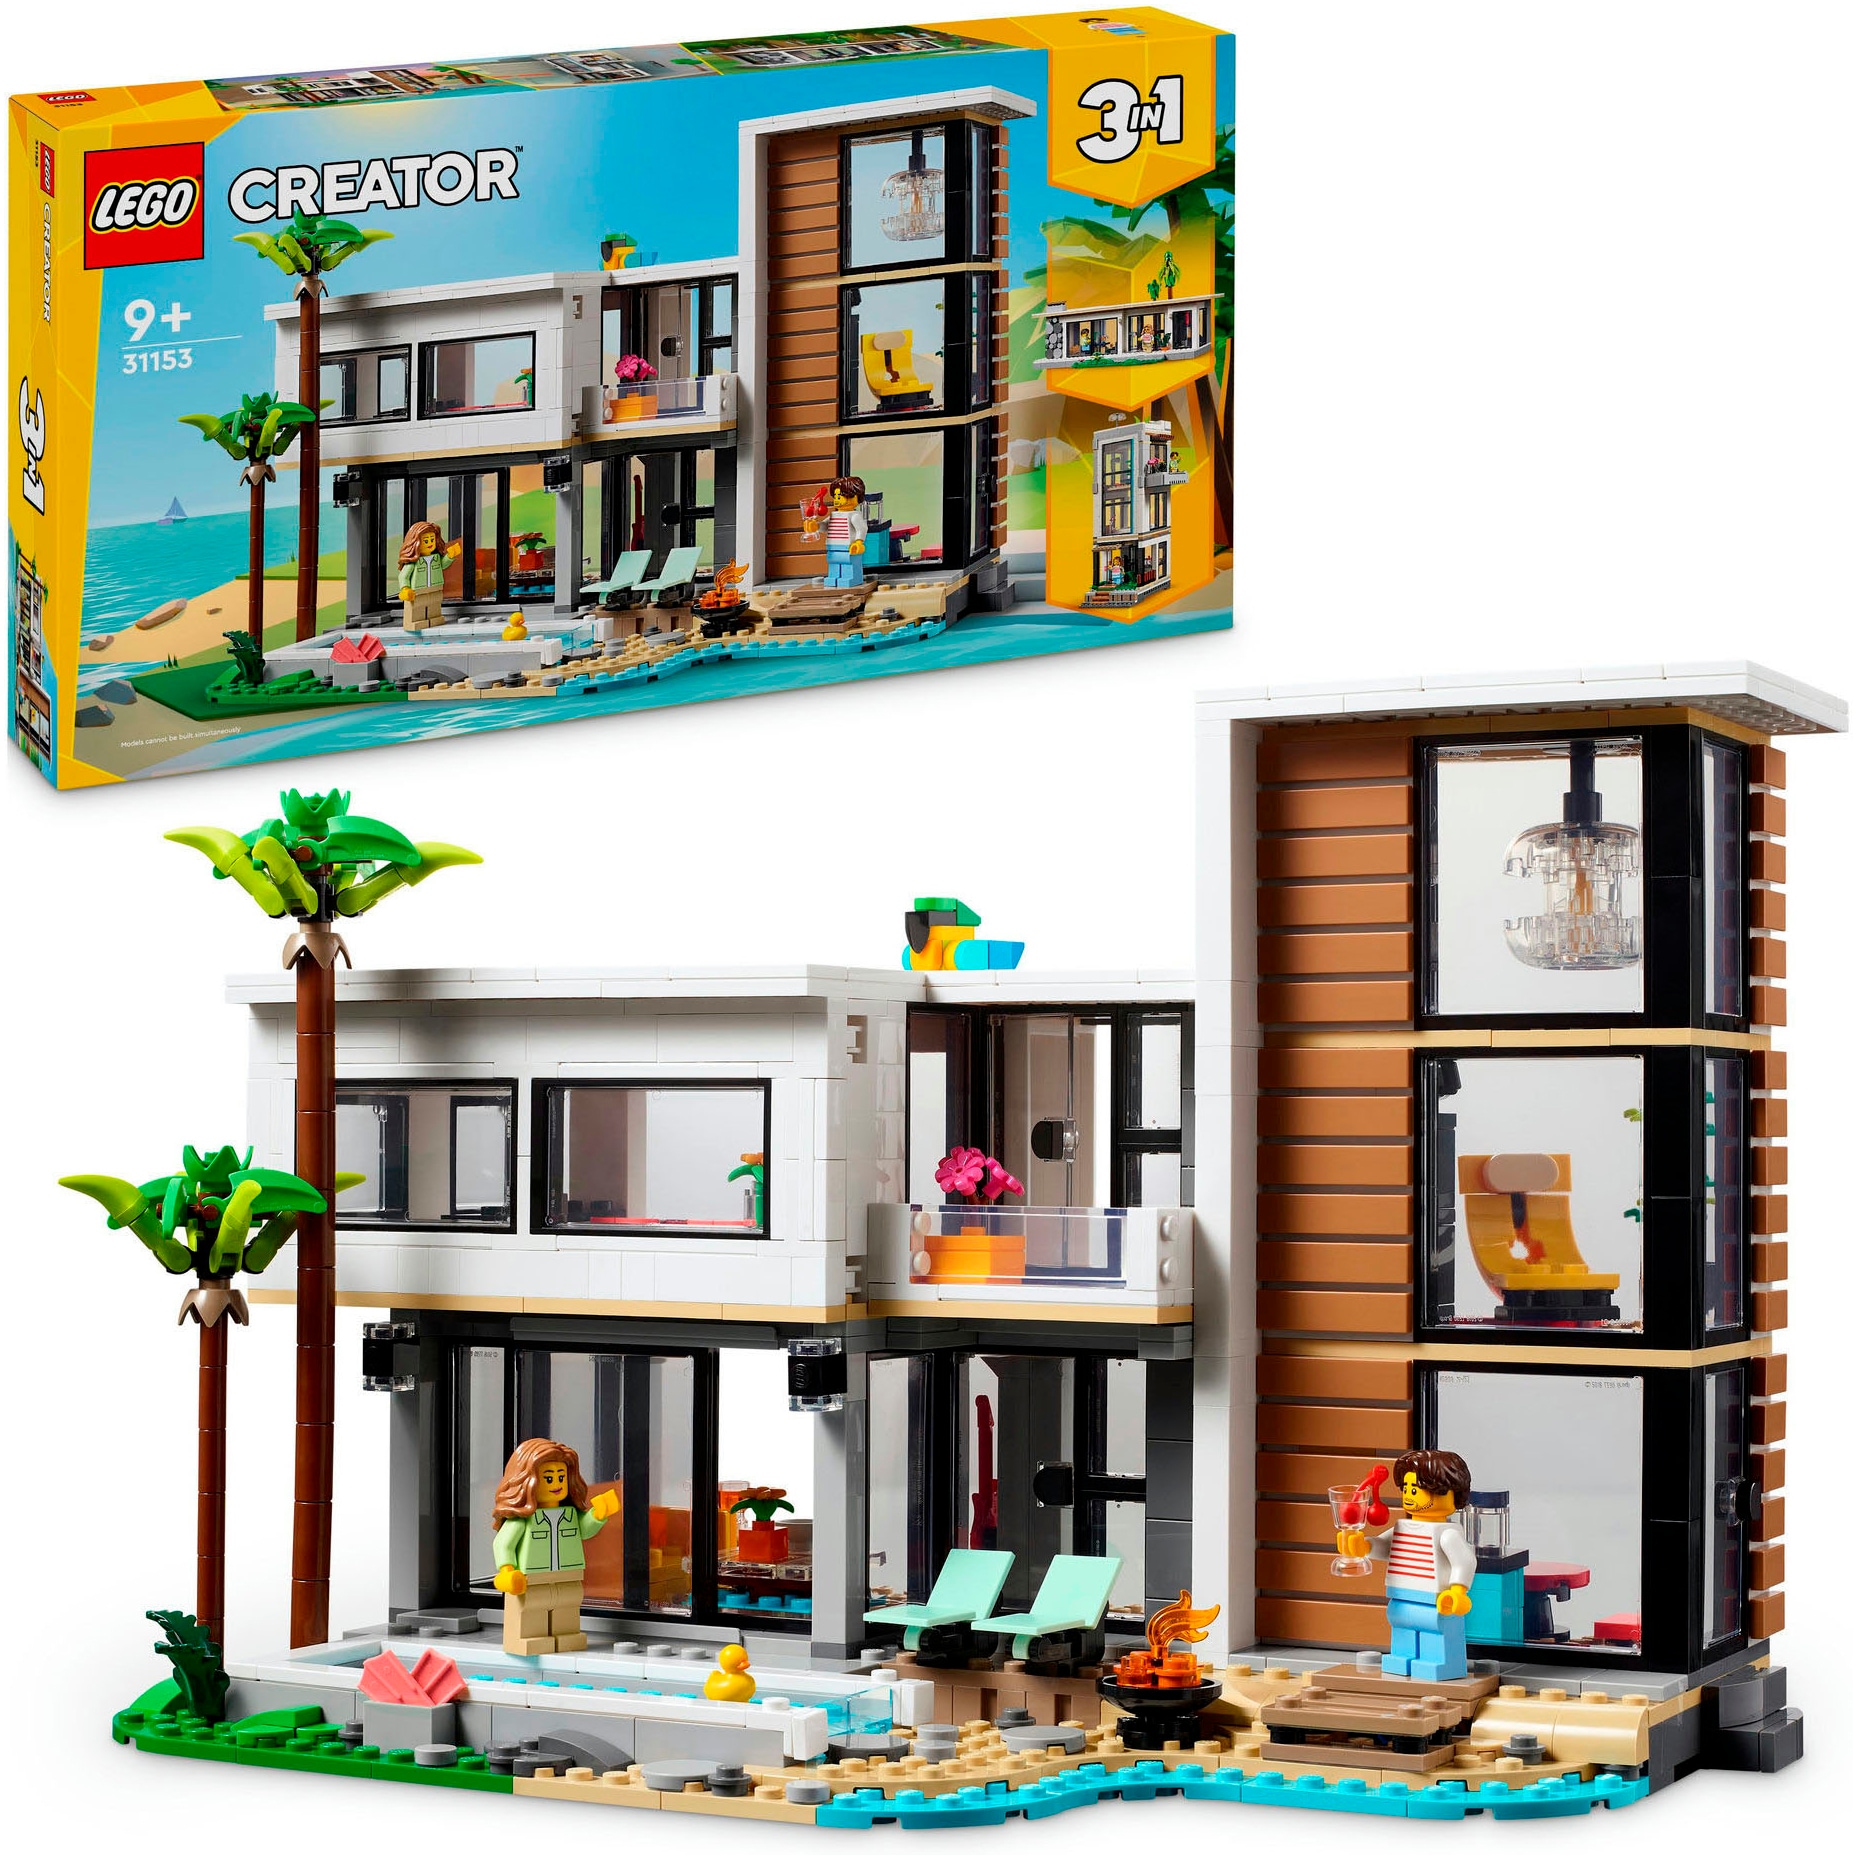 Konstruktionsspielsteine »Modernes Haus (31153), LEGO Creator 3in1«, (939 St.), Made...